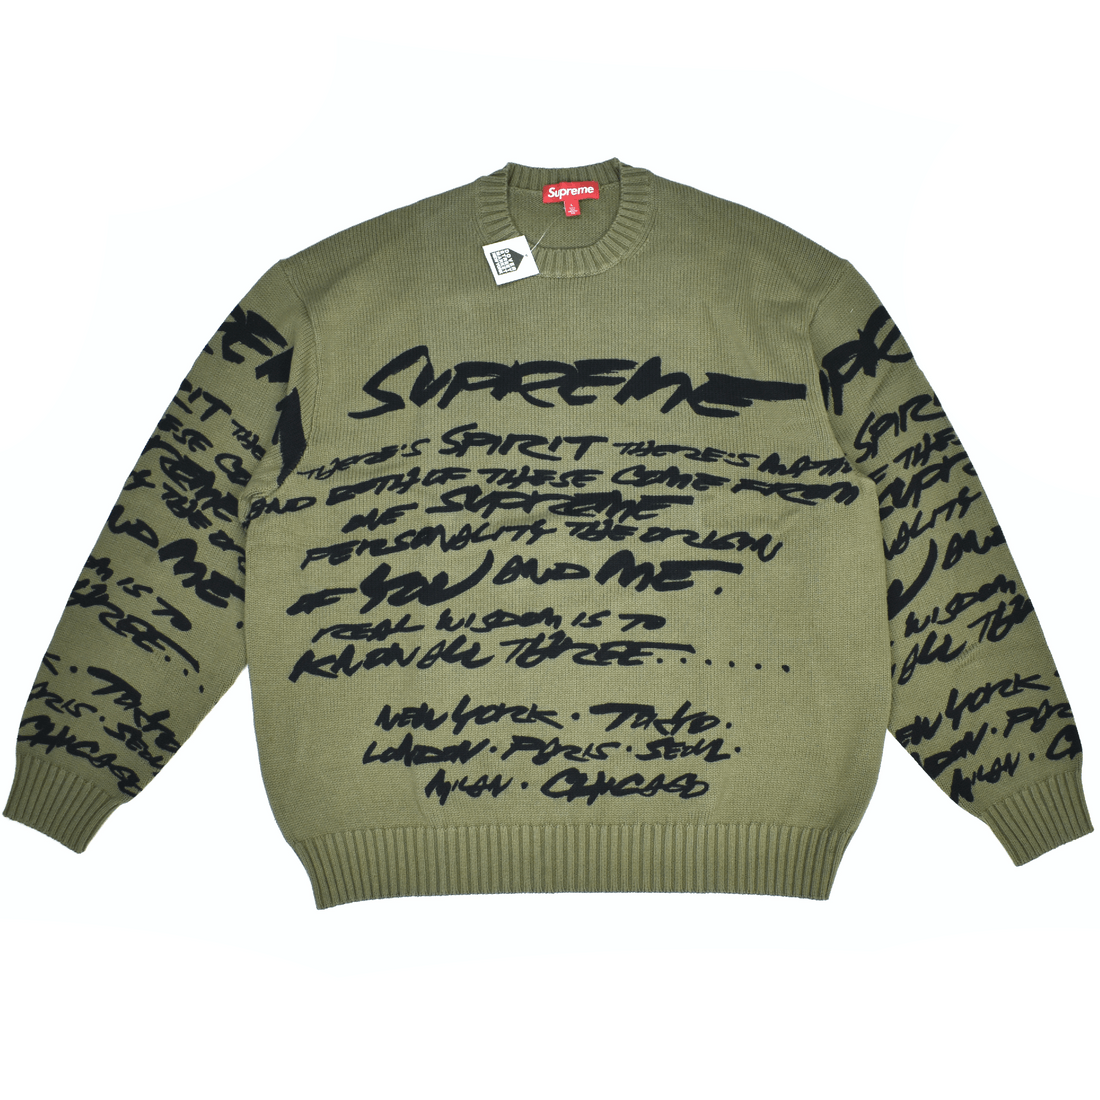 Supreme Supreme Futura Allover Print Sweater Olive | Grailed